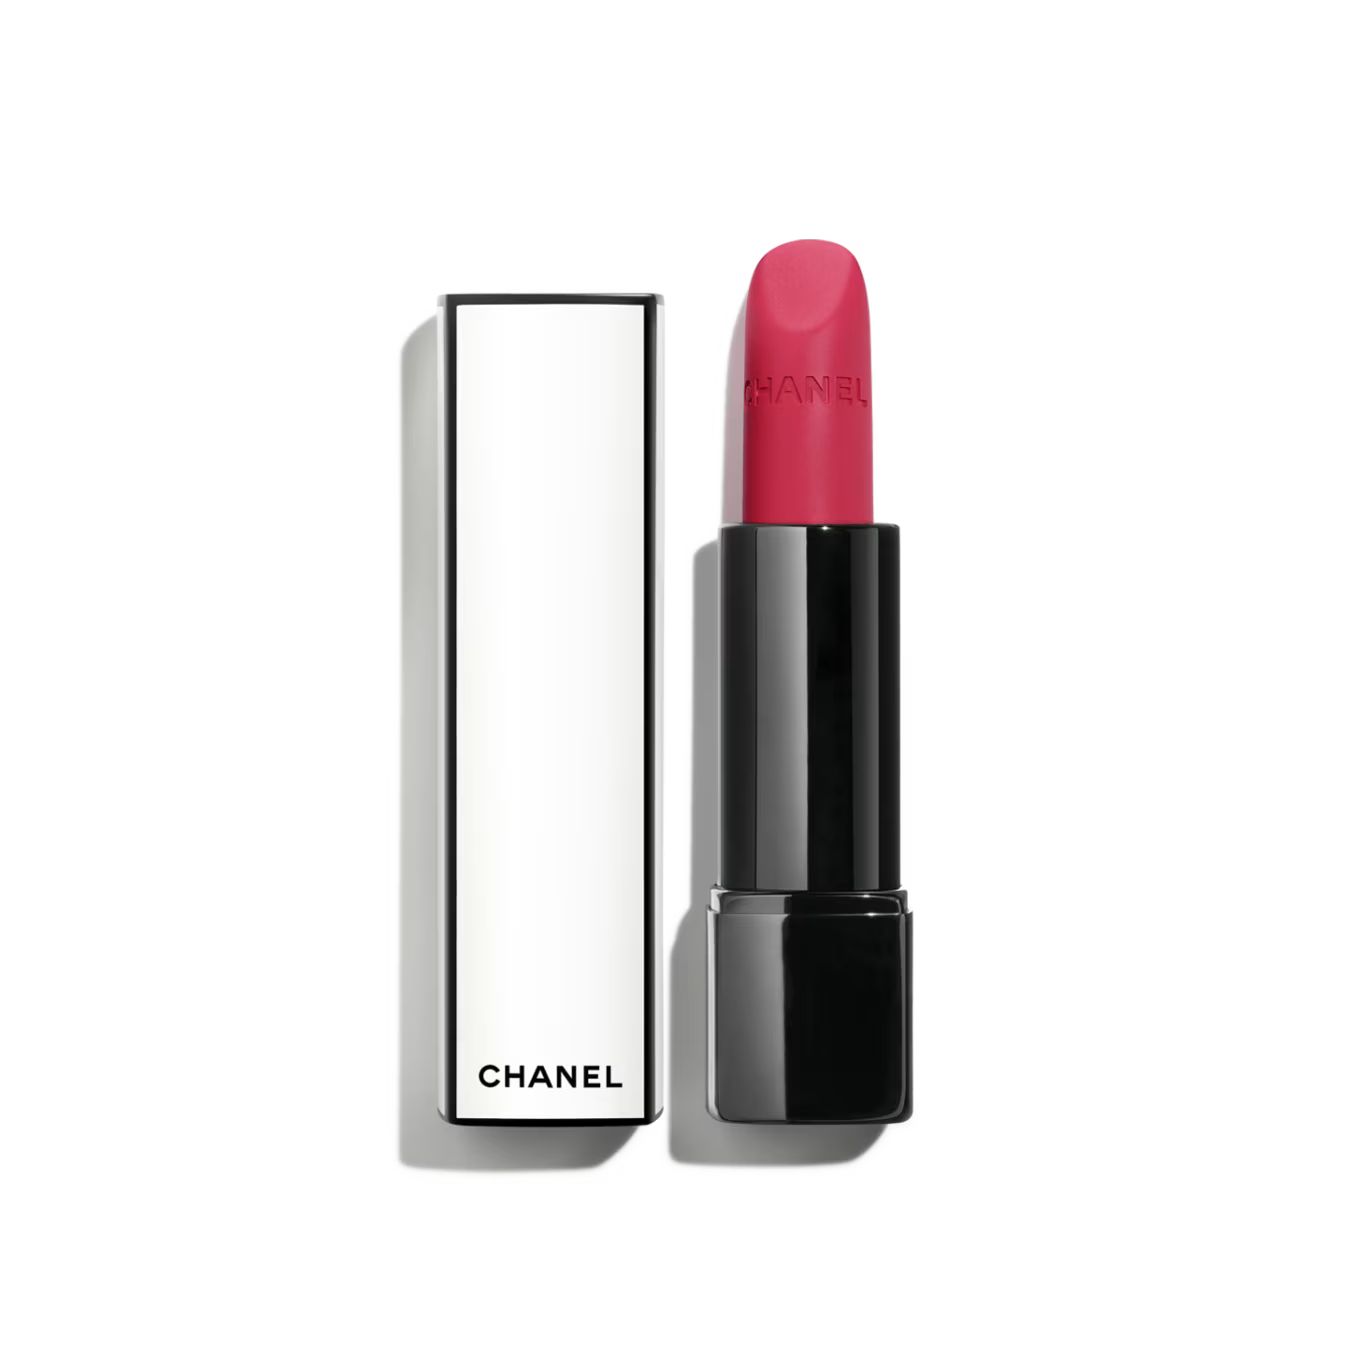 ROUGE ALLURE VELVET NUIT BLANCHE Luminous matte lip colour 03:00 | CHANEL | Chanel, Inc. (US)